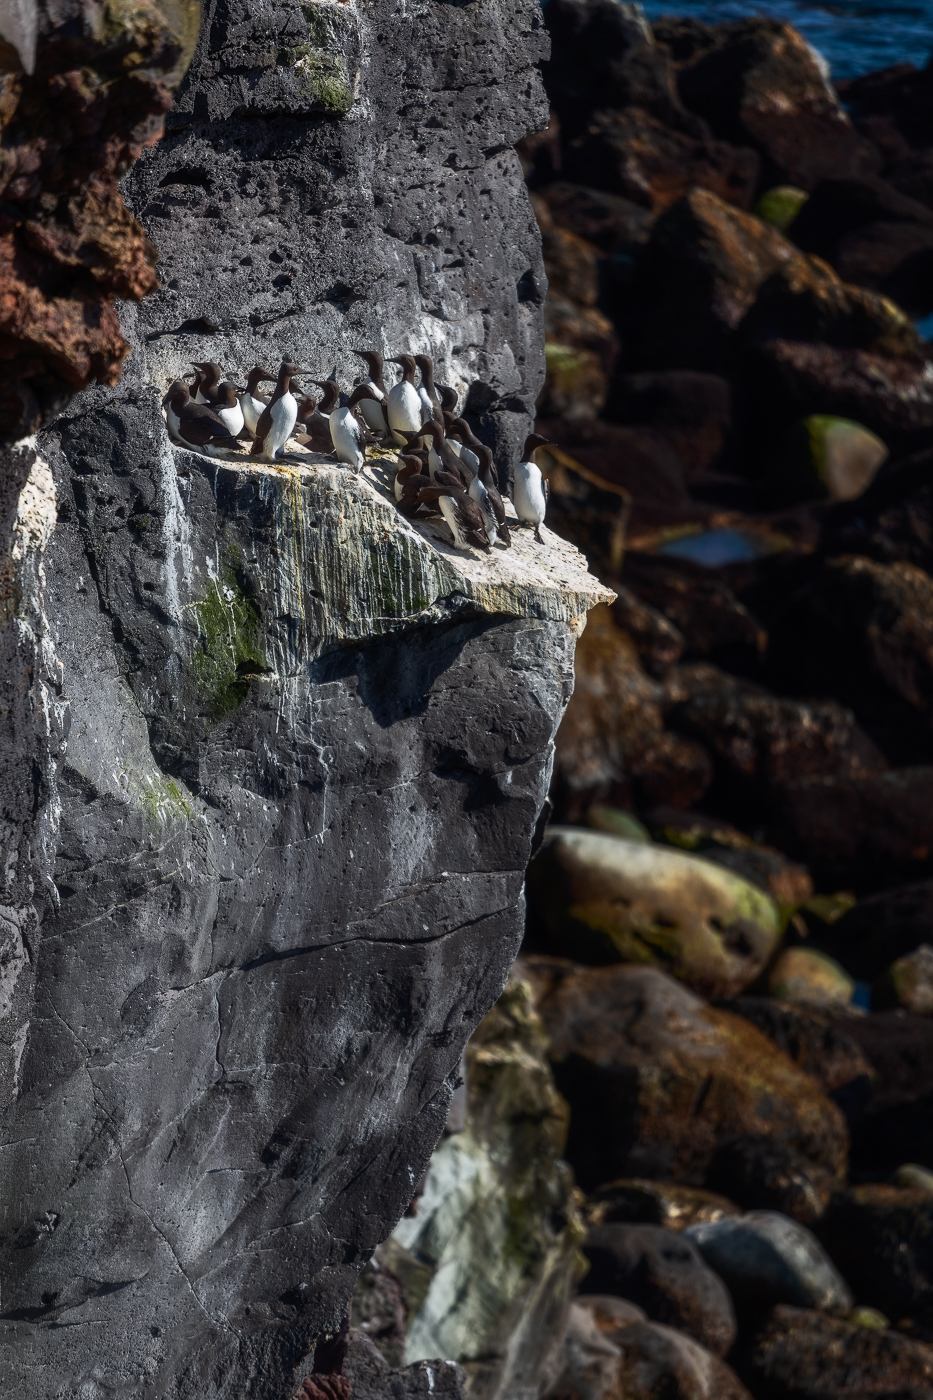 Fitto gruppo di urie comuni (Uria aalge) si ammassa su un sottile terrazzino roccioso a picco sull’oceano. Snæfellsjökull National Park, Islanda.